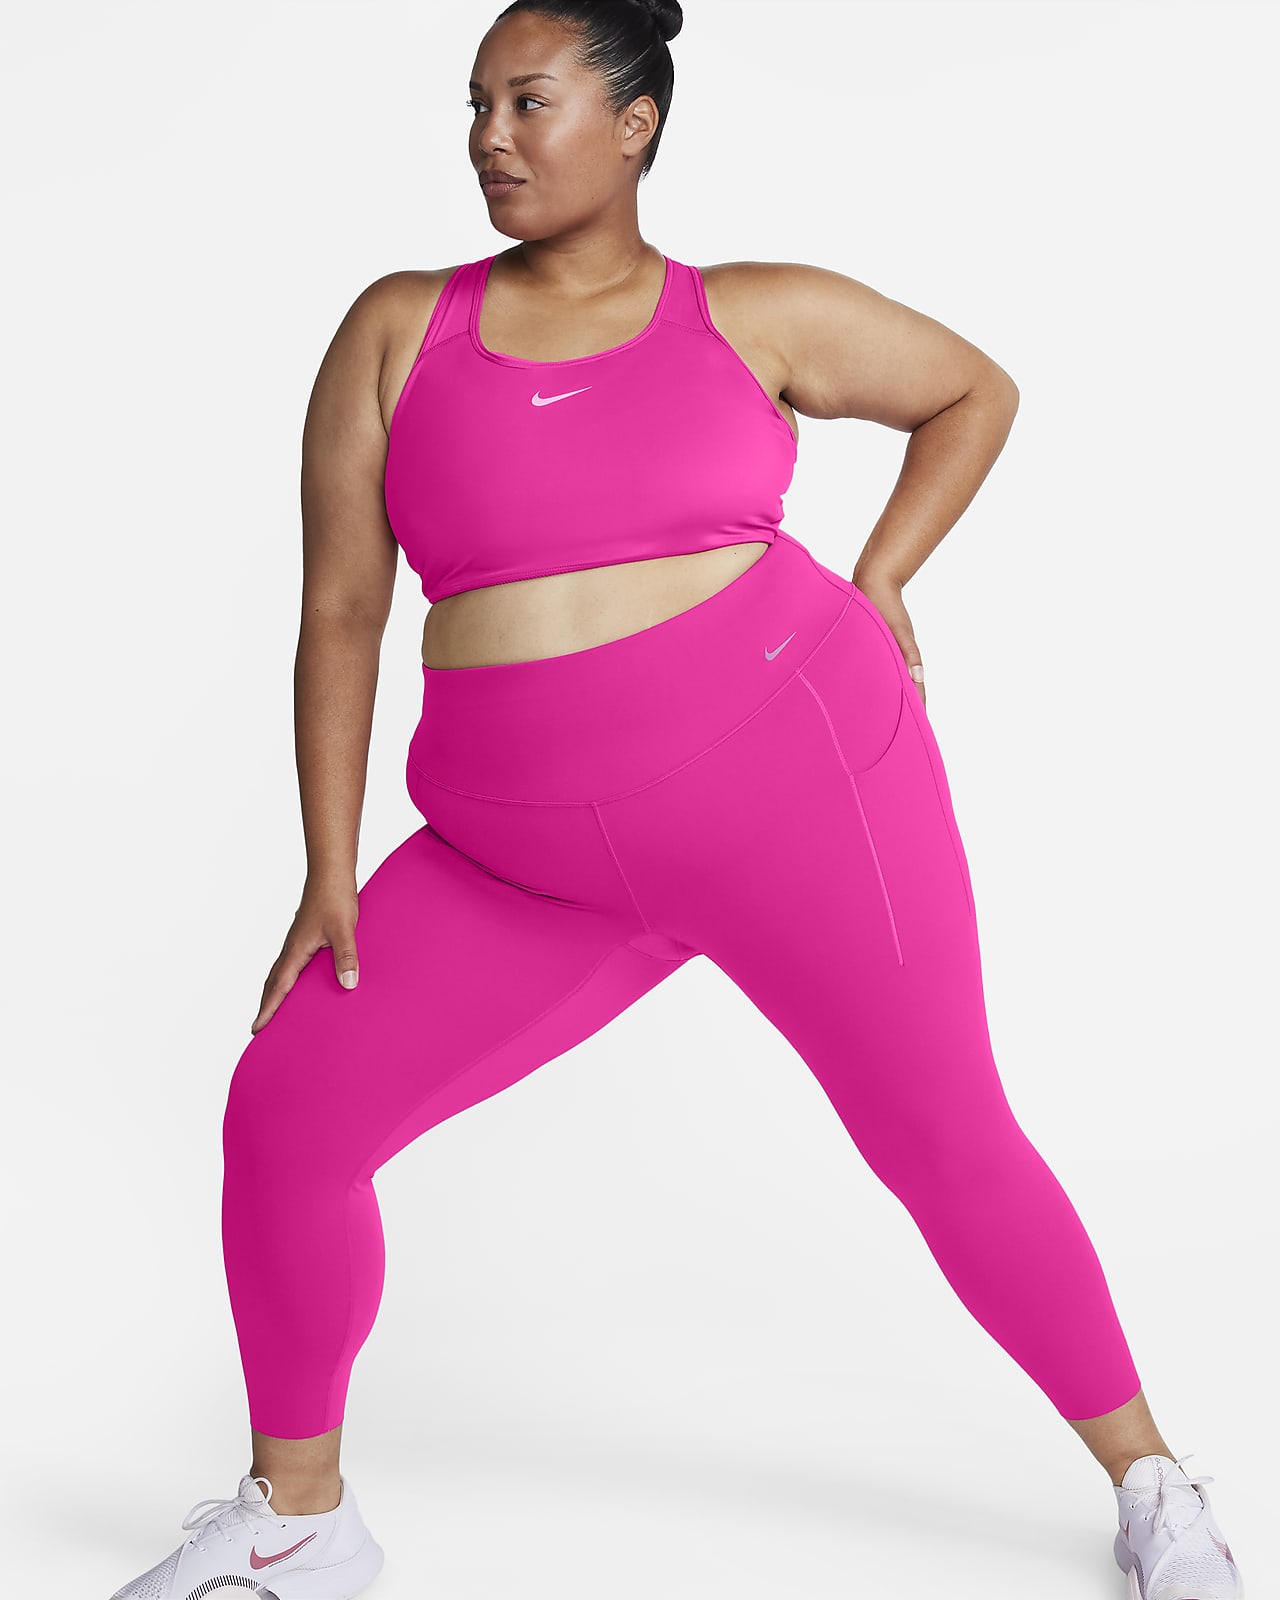 Nike Universa leggings i 7/8 lengde med middels støtte, høyt liv og lommer til dame (Plus Size)